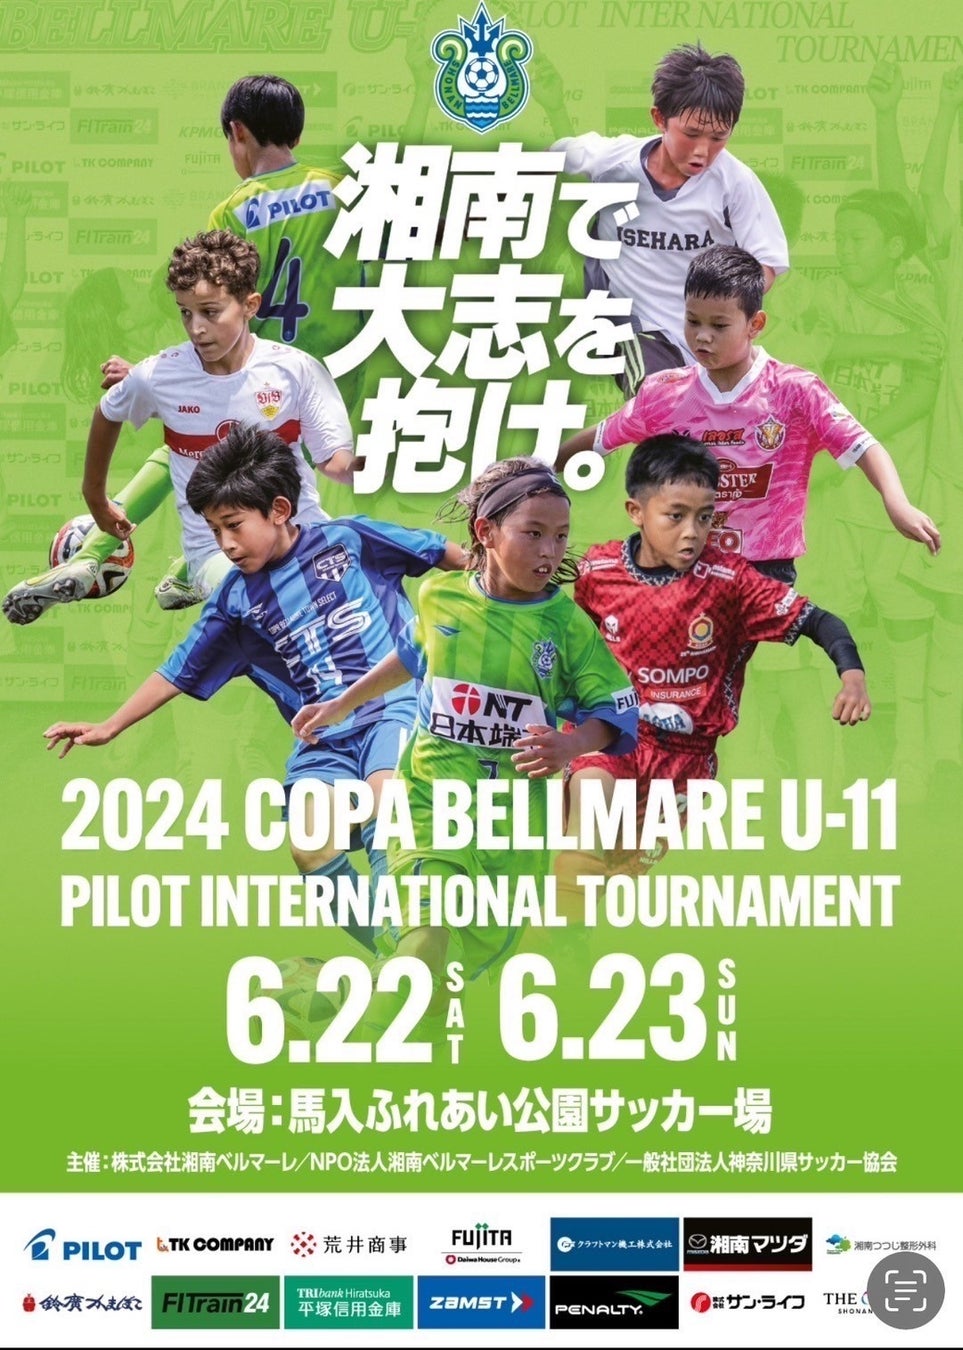 ザムストはジュニアサッカー大会「2024 COPA BELLMARE U-11 PILOT INTERNATIONAL TOURNAMENT」へ協賛